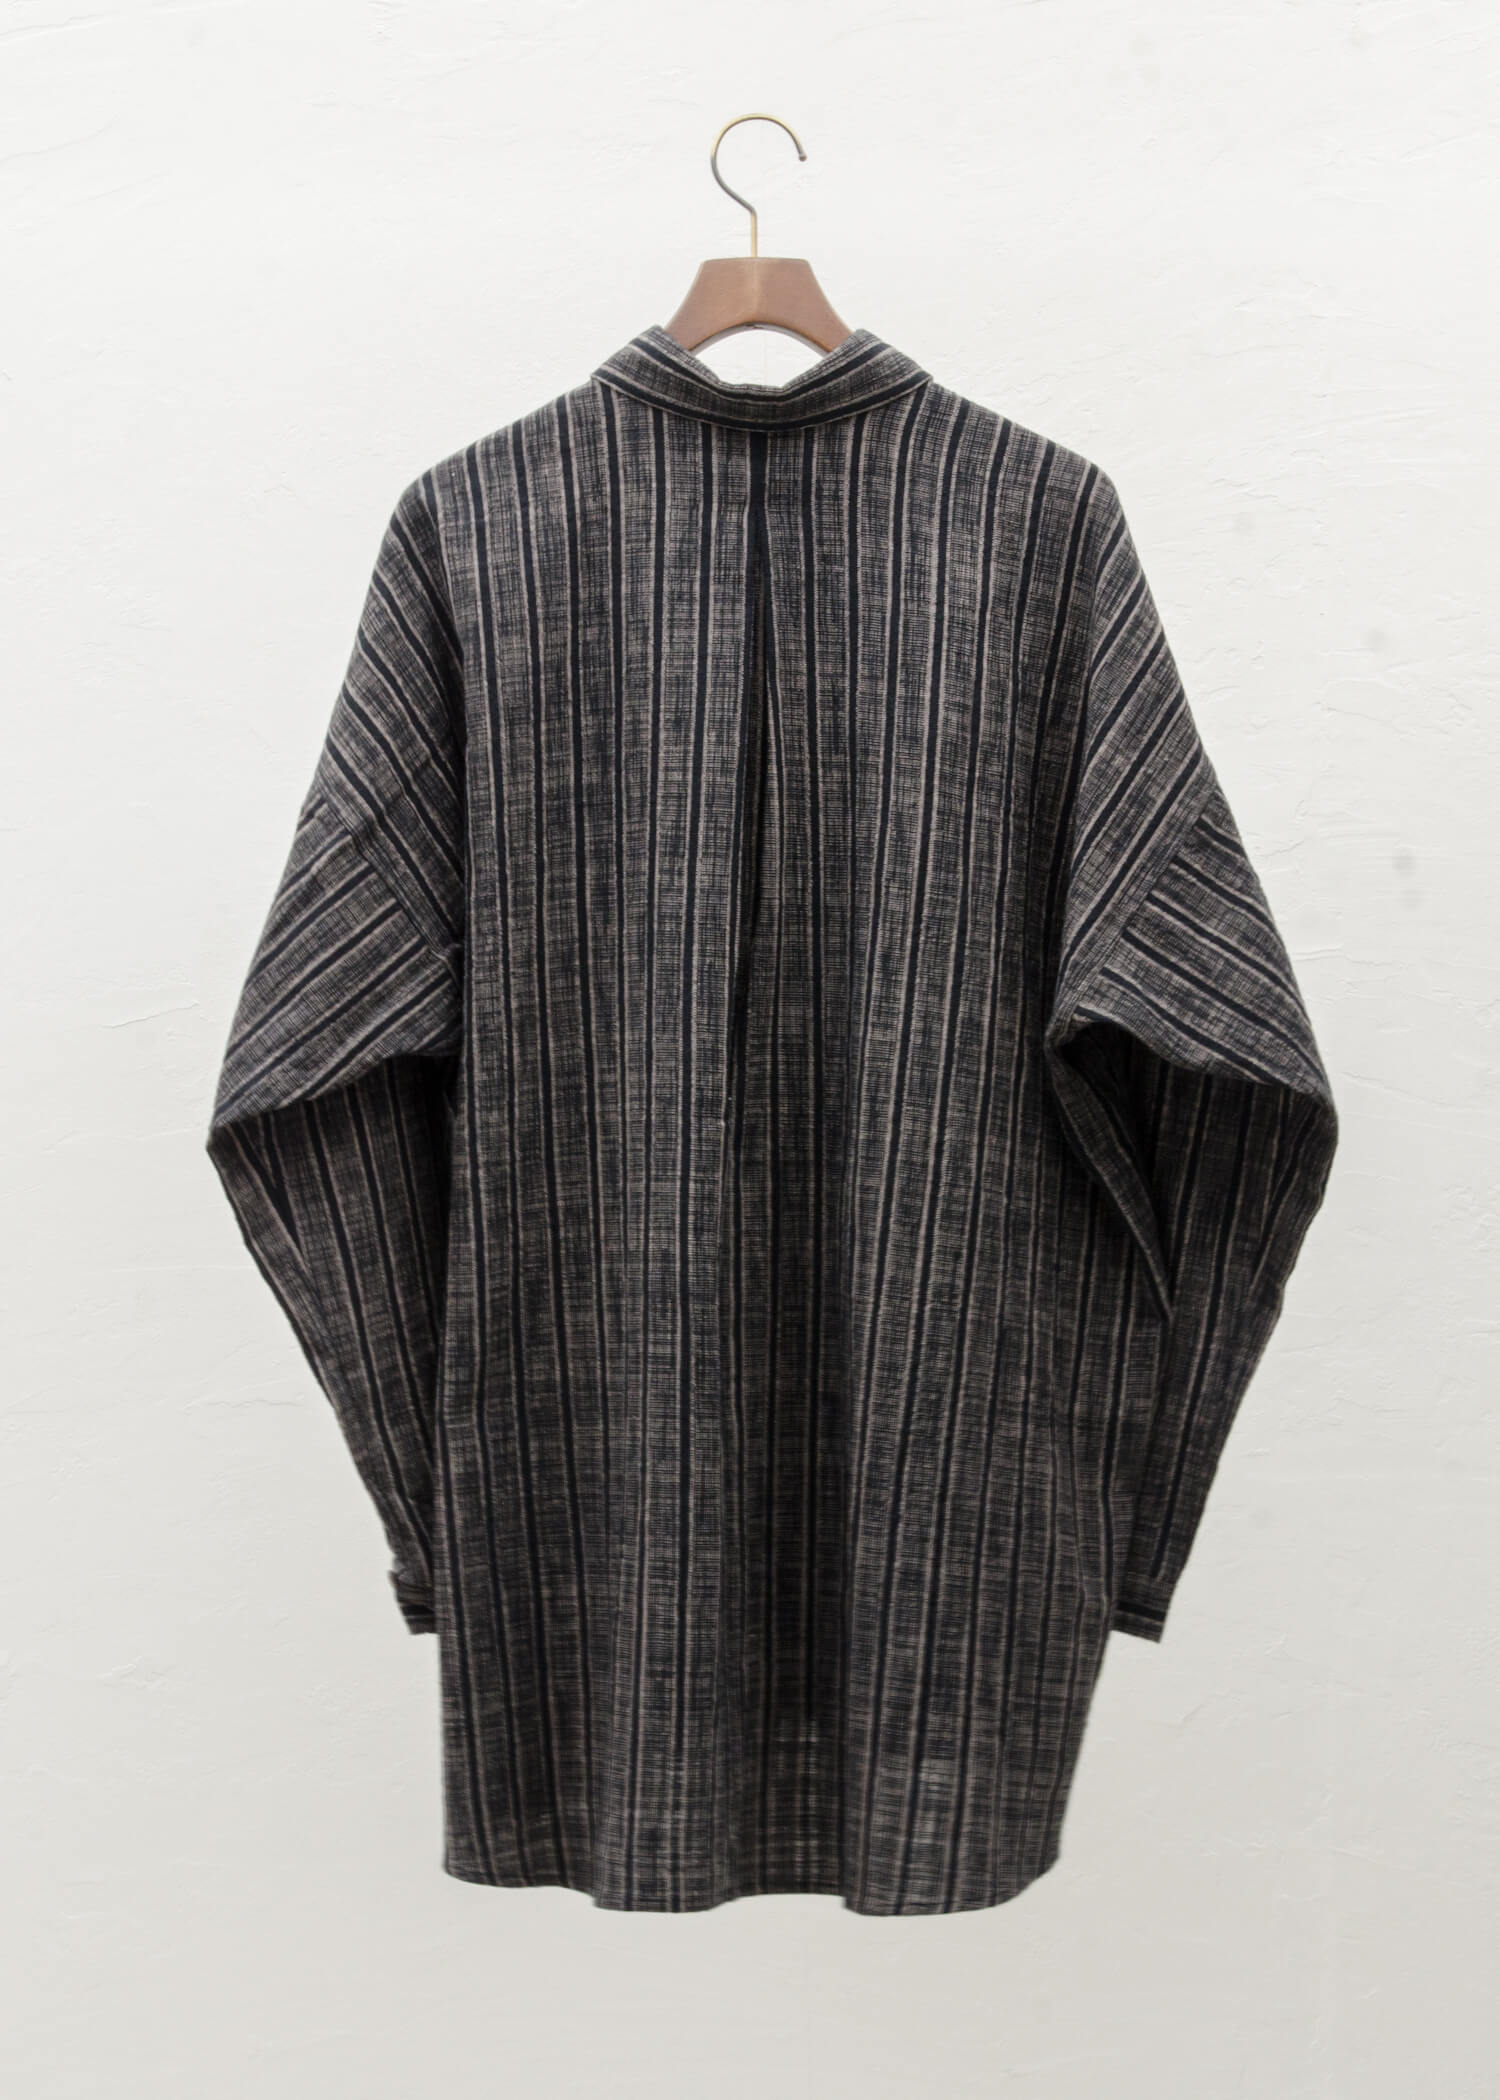 JAN-JAN VAN ESSCHE“衬衫#85”条纹棉布